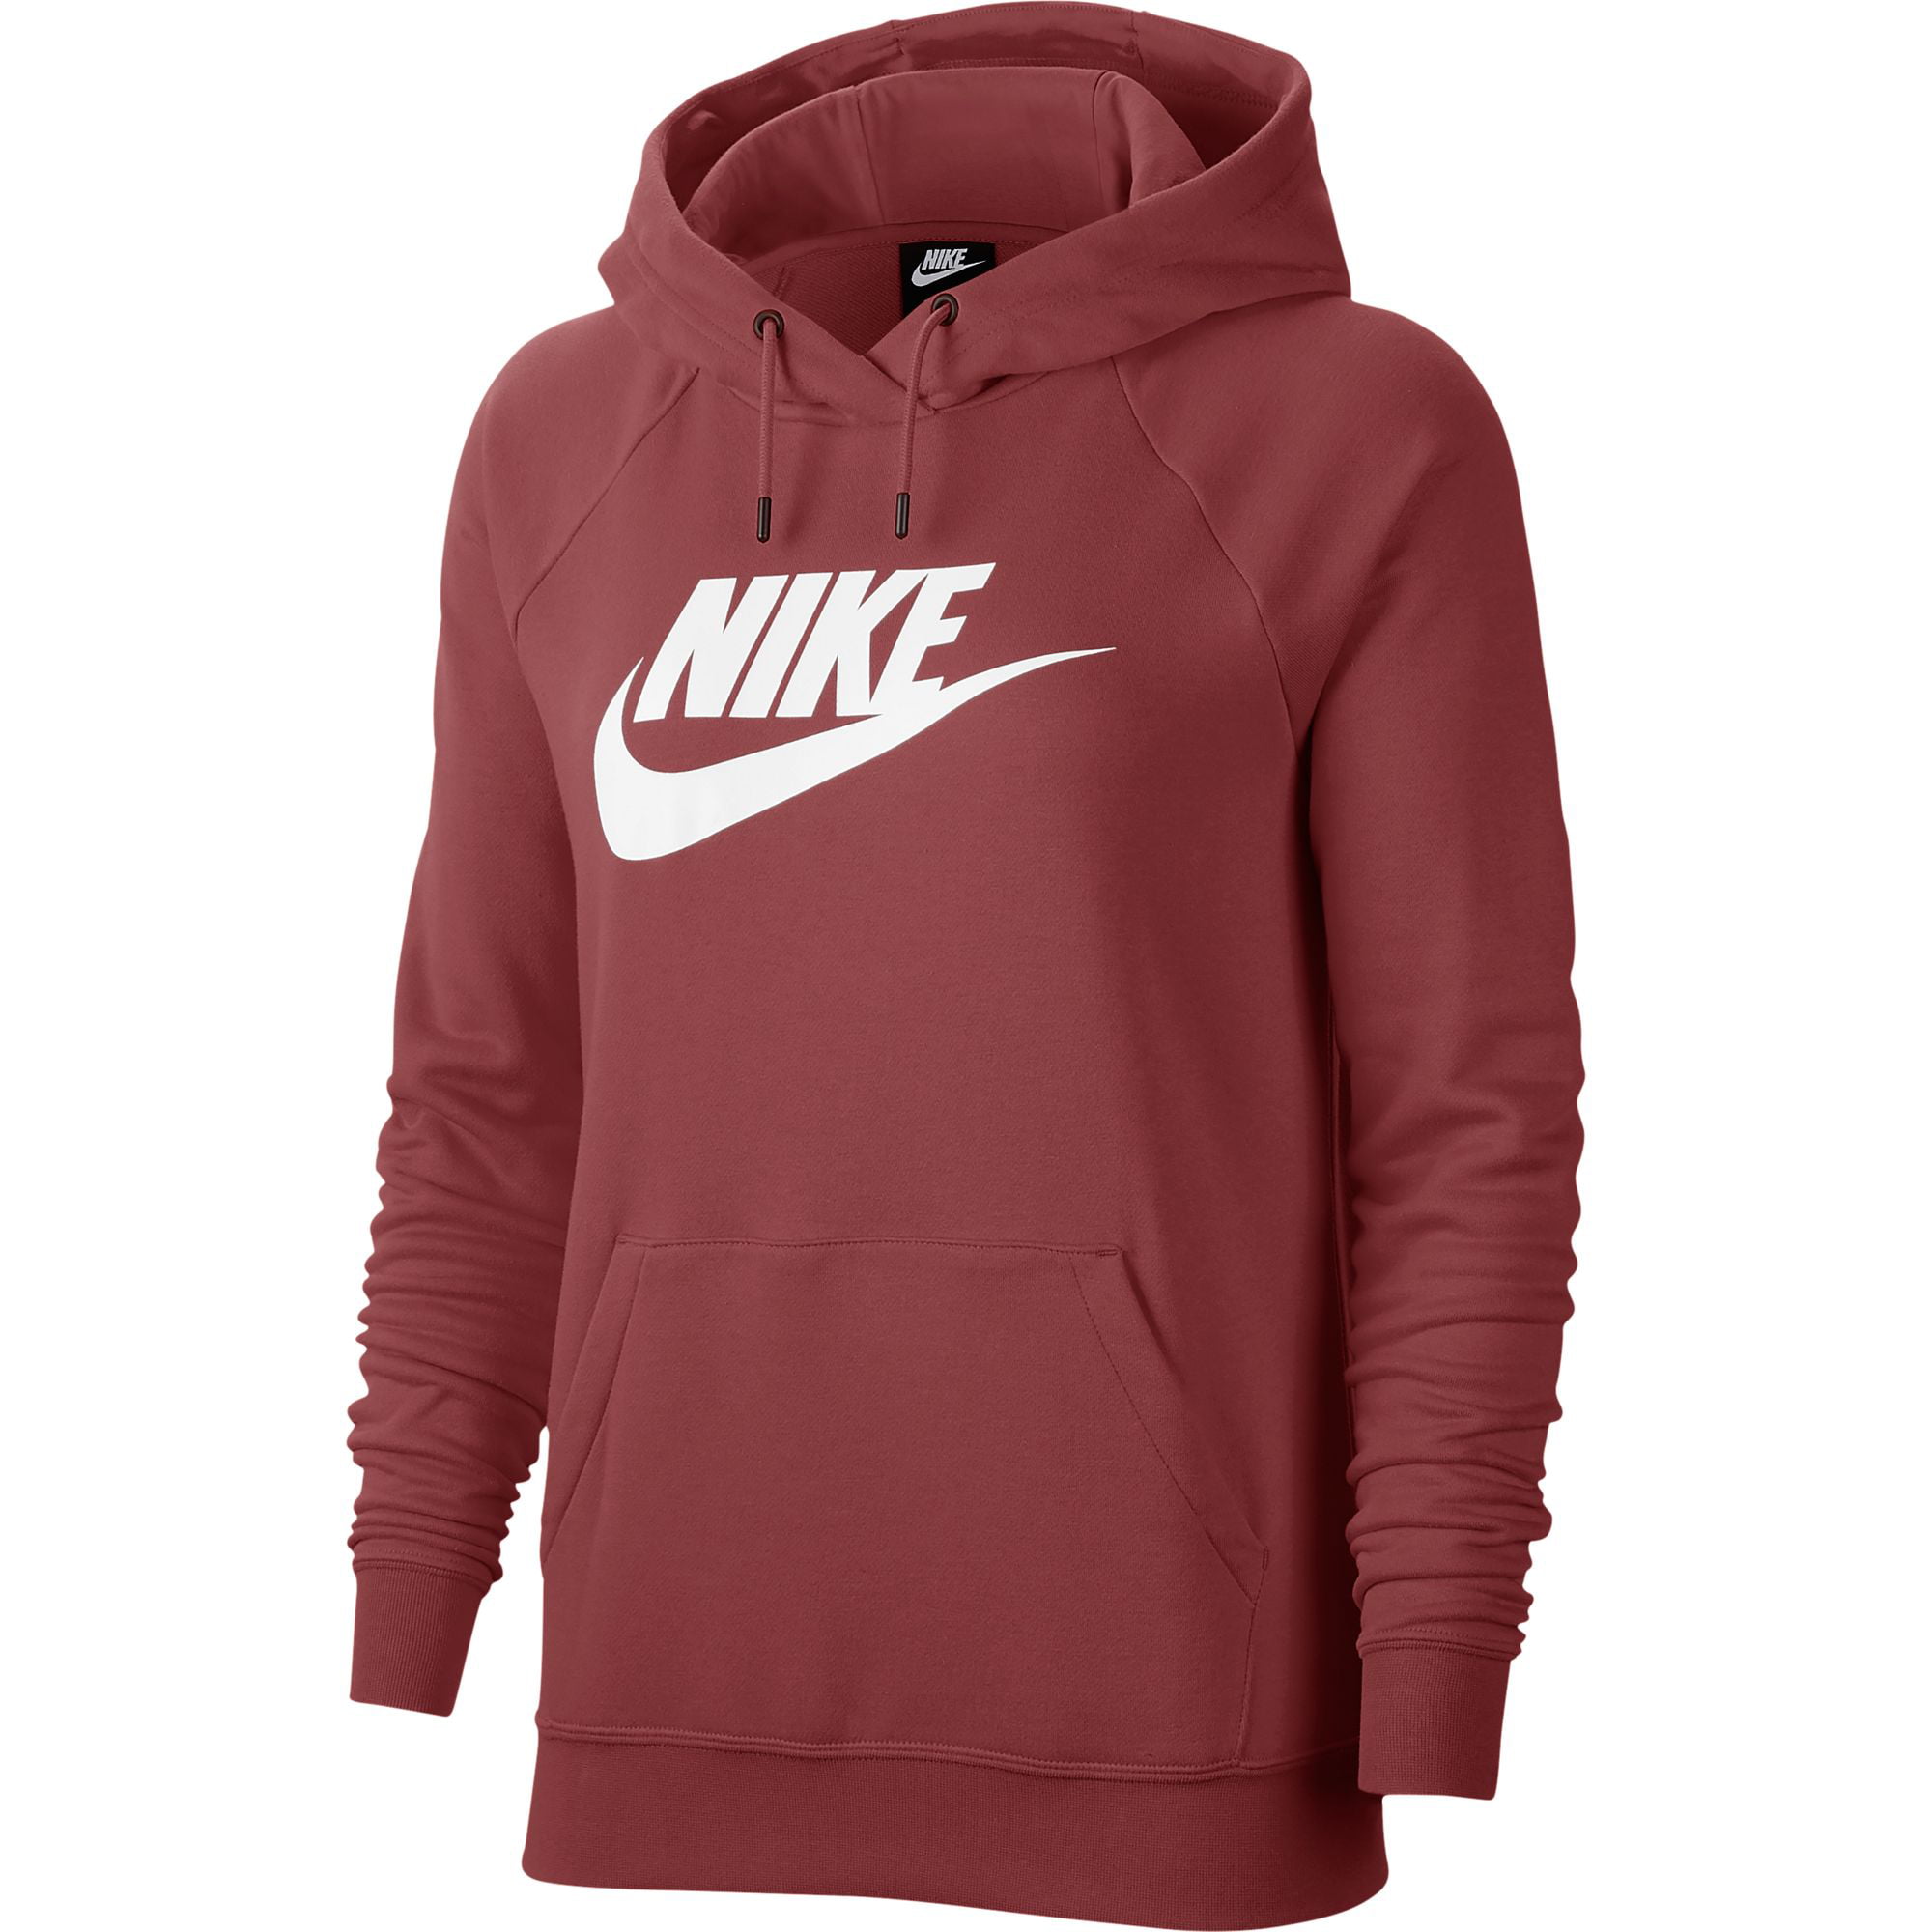 Nike Sportswear Women's Essential Fleece Pullover Hoodie - Walmart.com